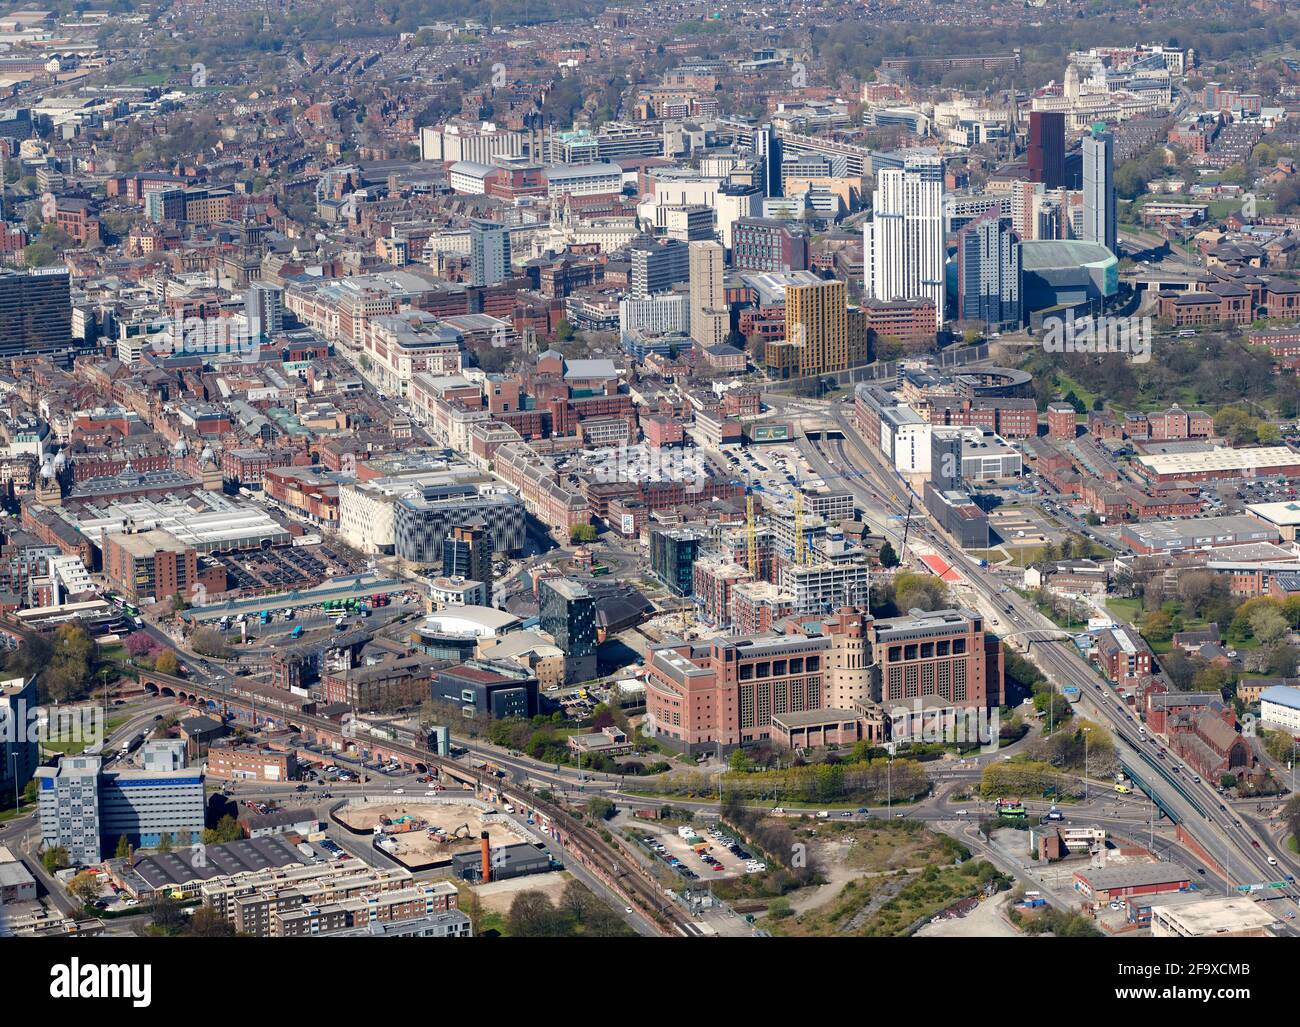 Vista aérea del centro de la ciudad de Leeds, West Yorkshire, norte de Inglaterra, Reino Unido, desde el este, edificio DSS, Quarry House, en primer plano Foto de stock